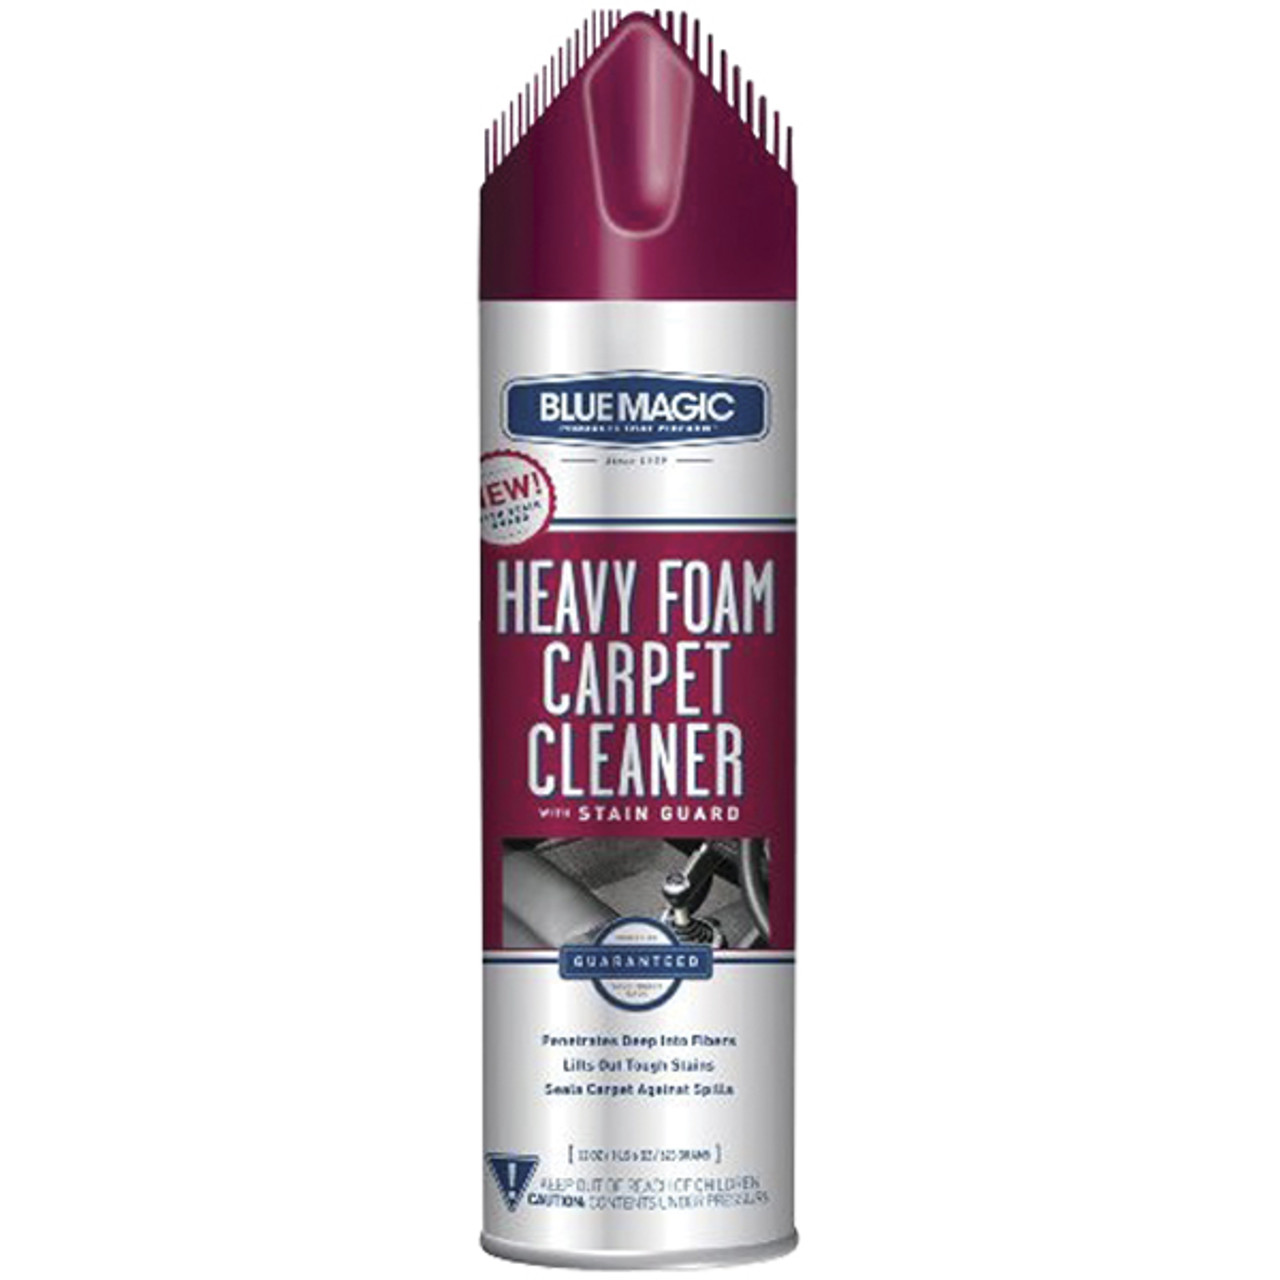 Heavy Foam Carpet Cleaner, 22oz Can, Case of 6, Blue Magic 905